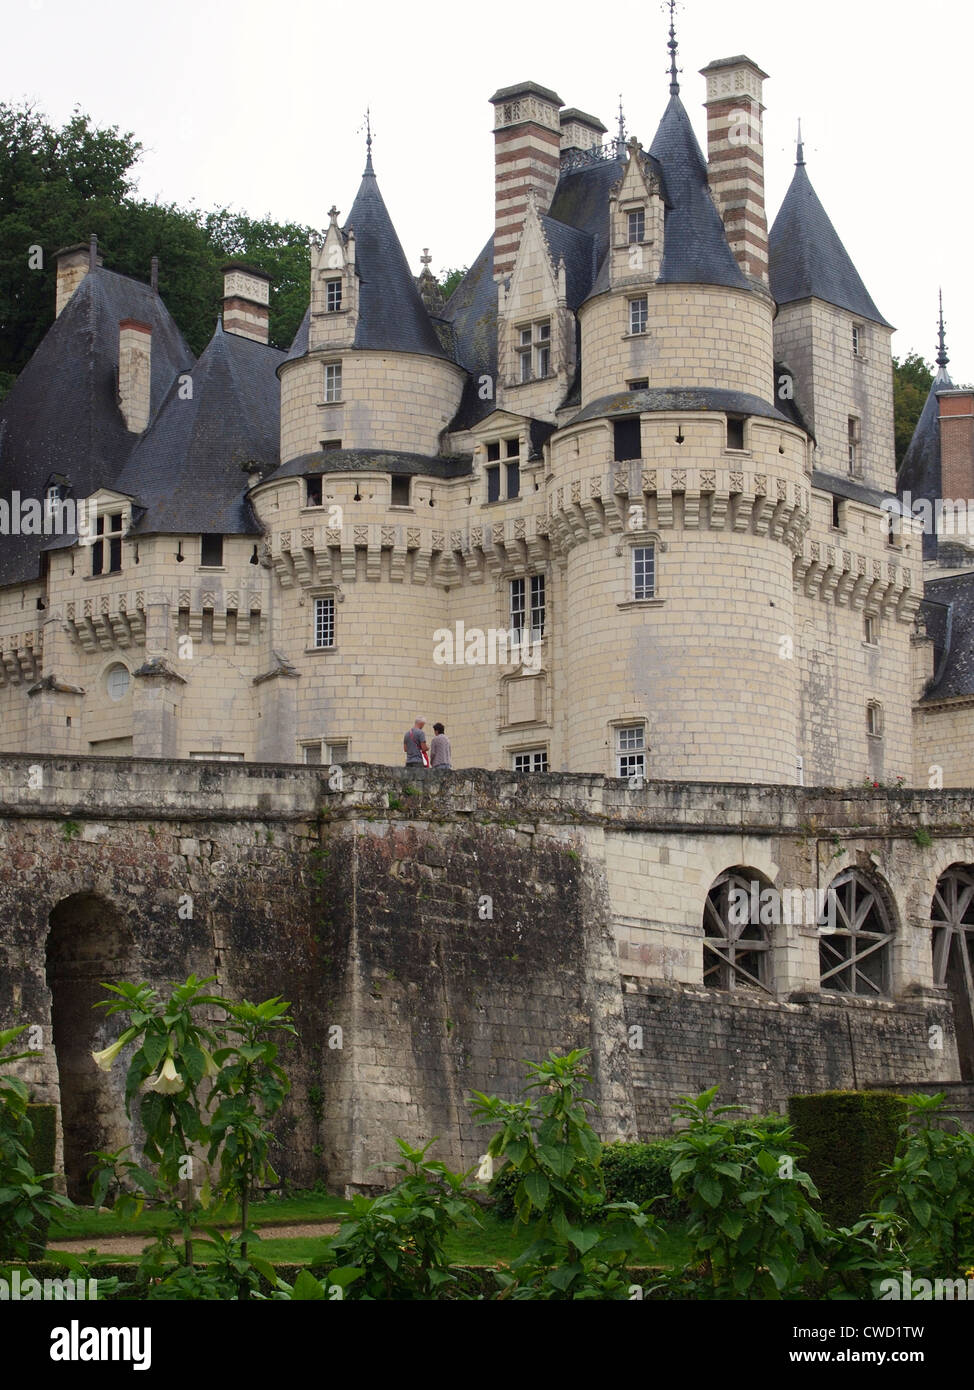 Chateau de Ussé, Loiretal, Frankreich Stockfoto